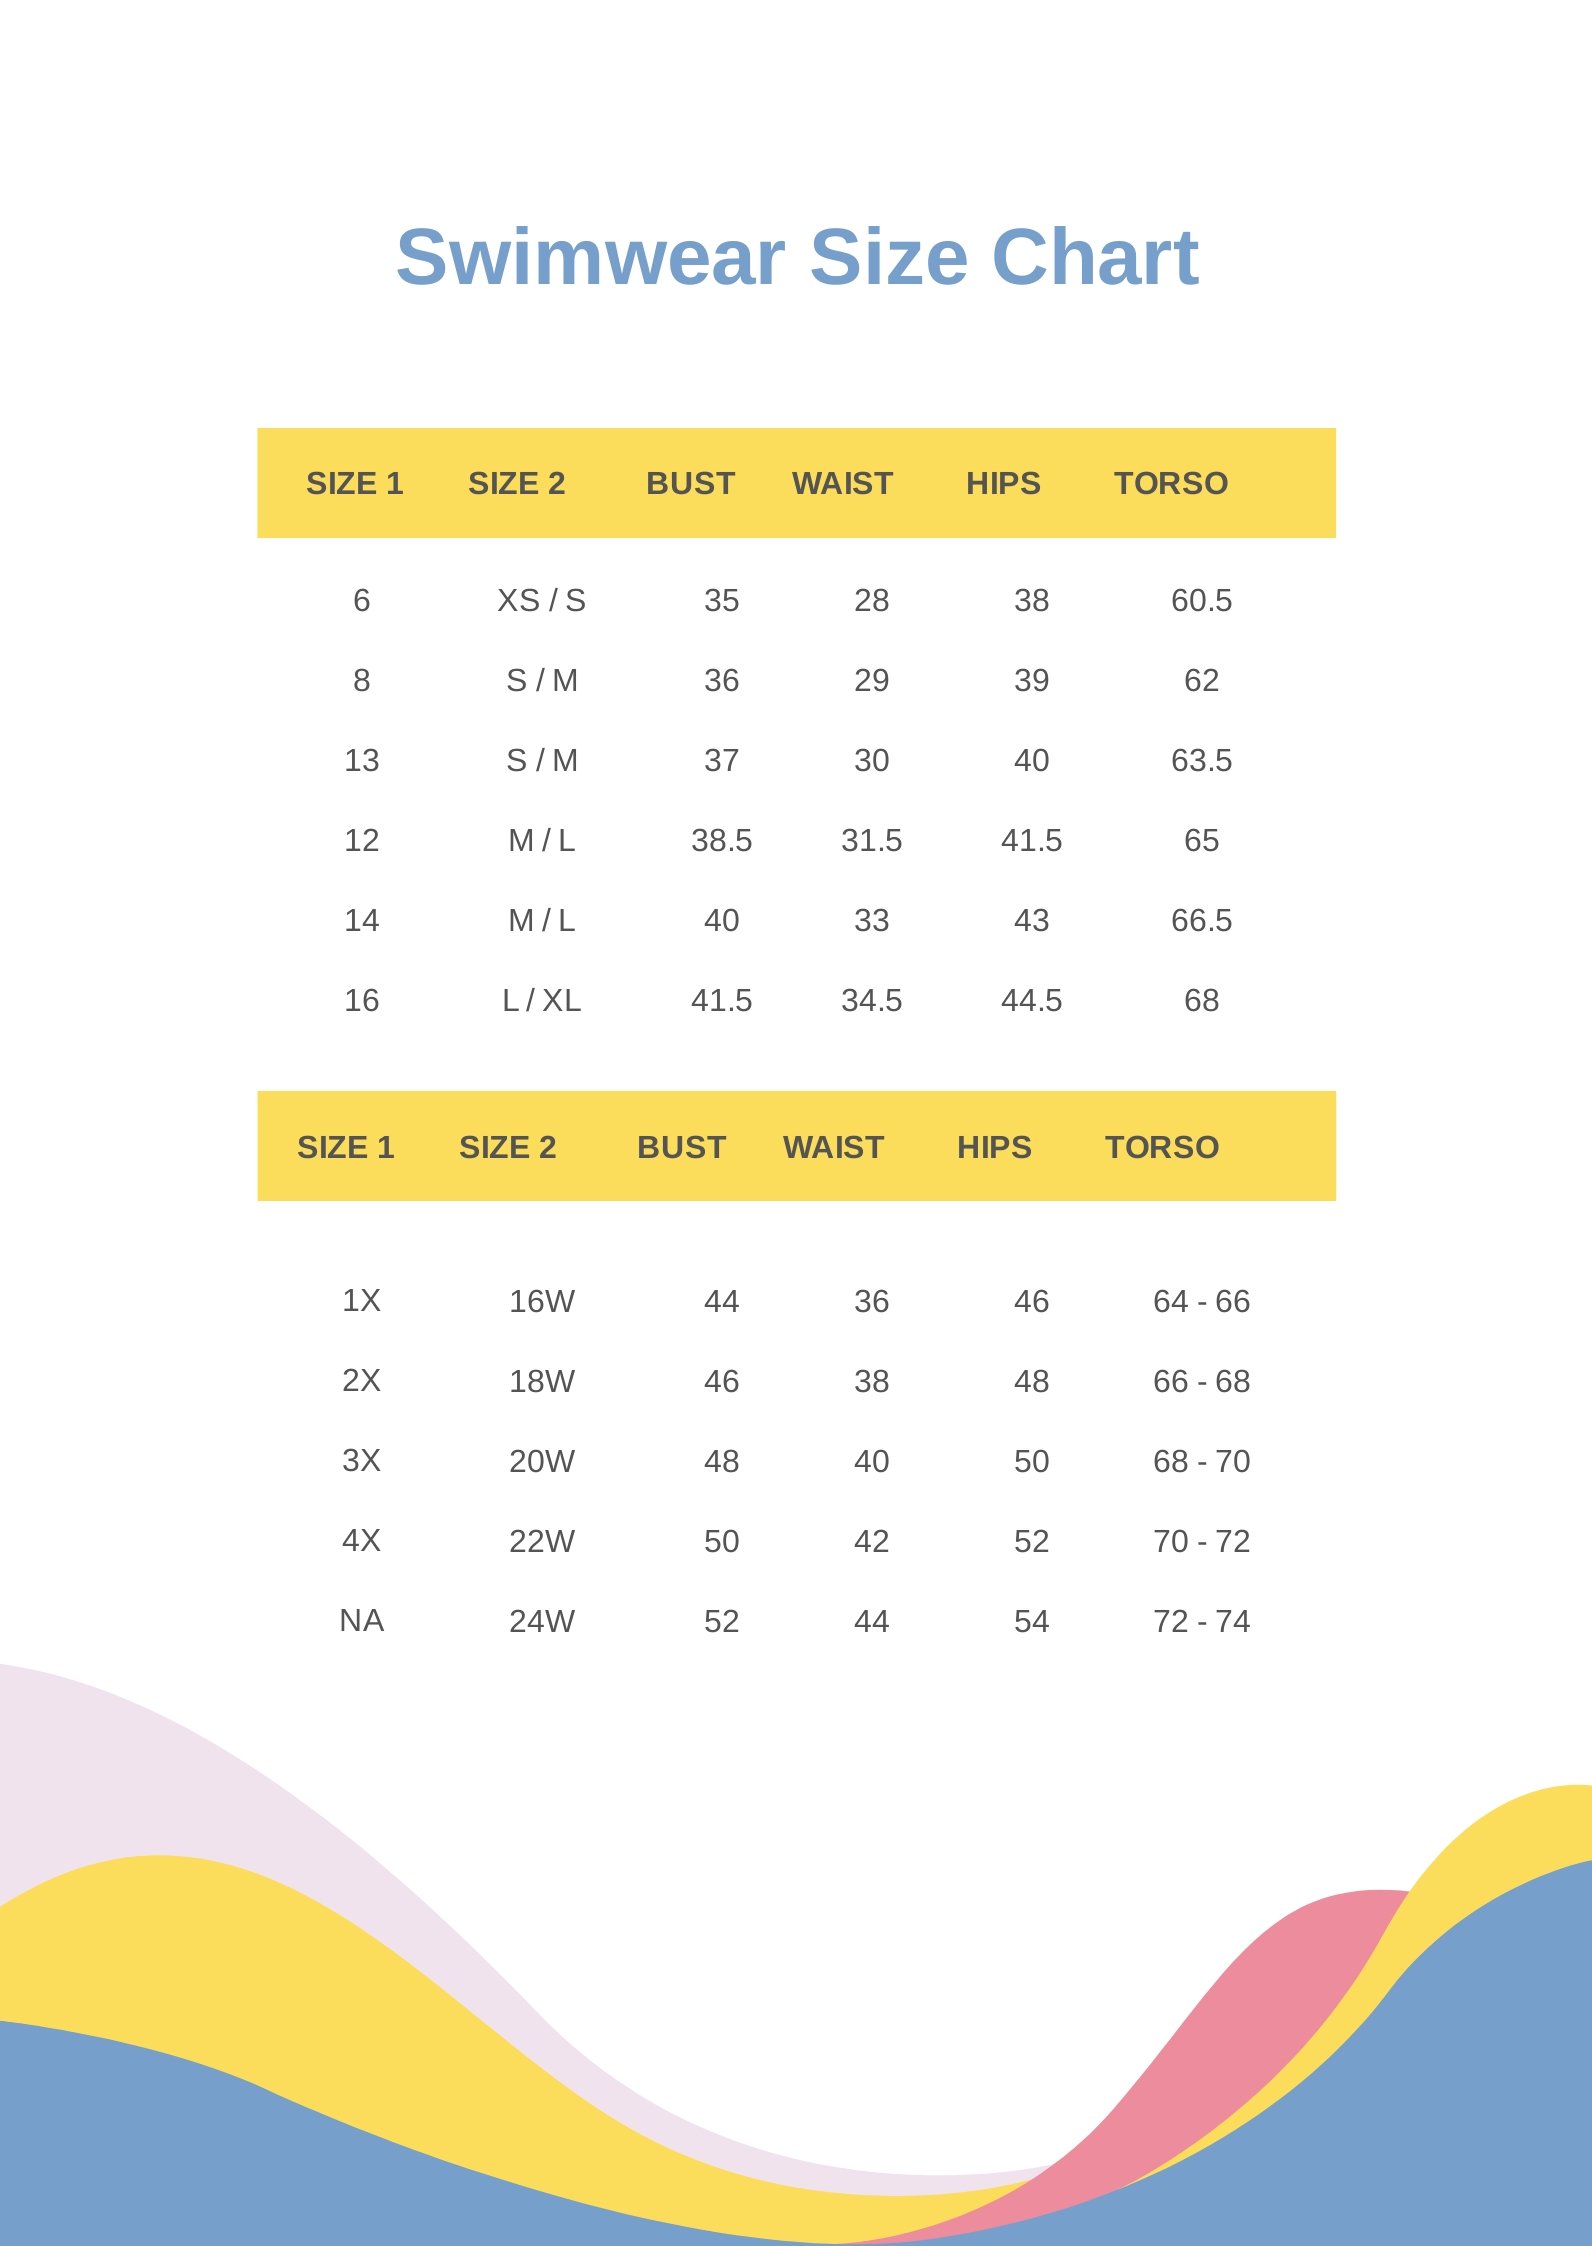 Swimwear Size Chart in PDF